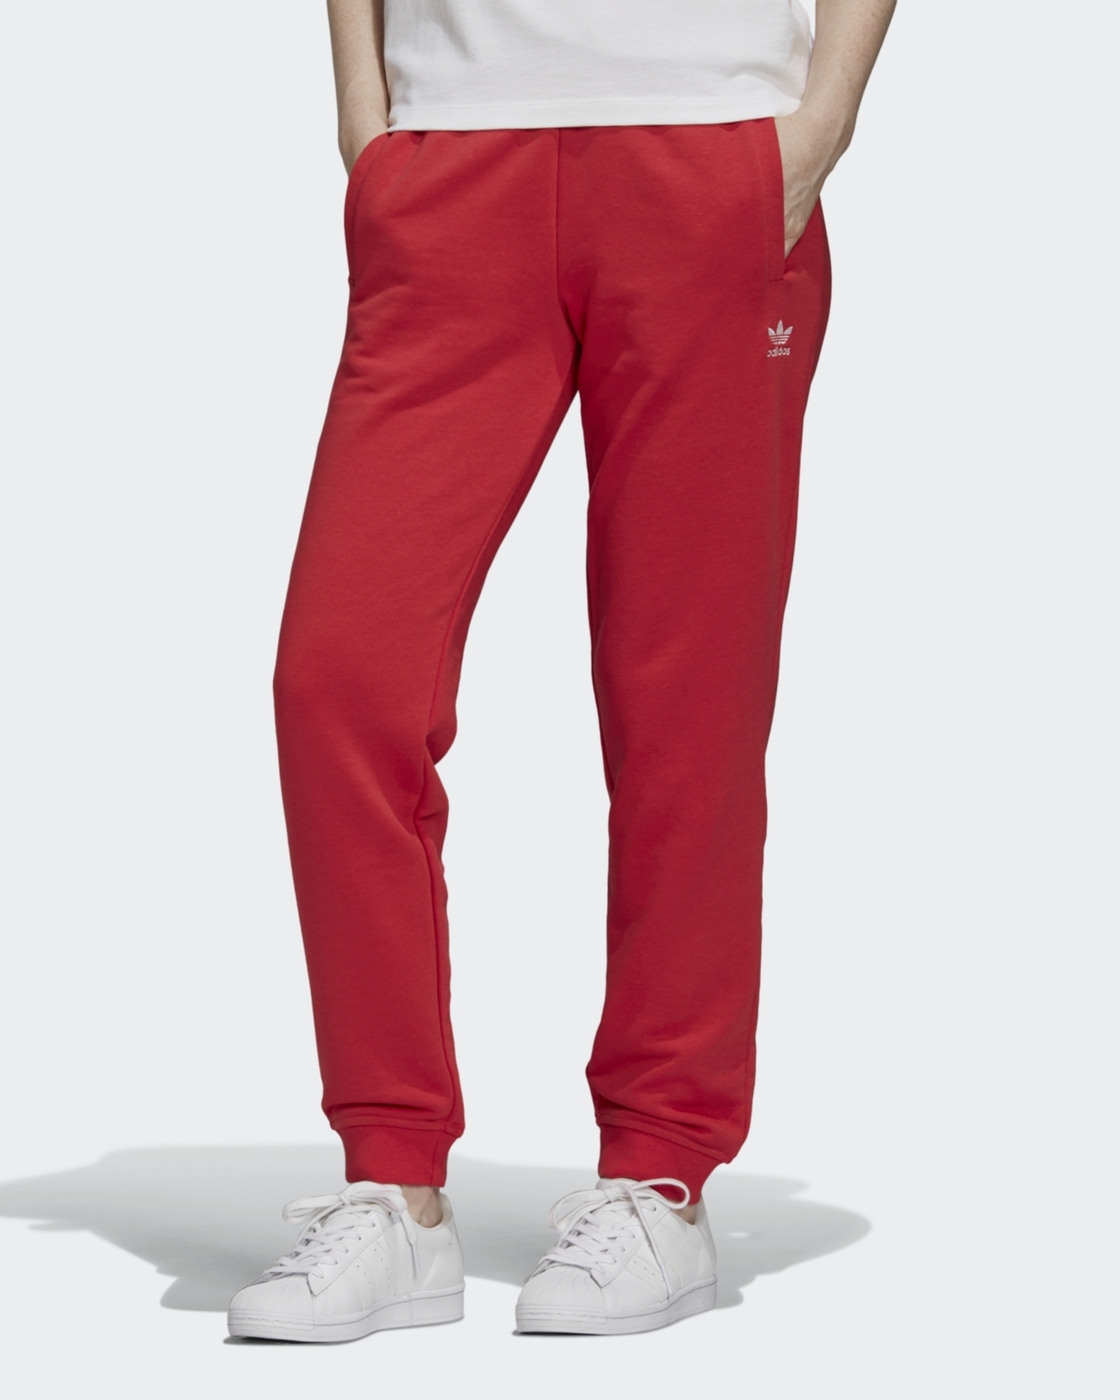 Красные штаны адидас. Брюки спортивные adidas Originals track Pants. Adidas Originals Red штаны. Адидас красные штаны 3.